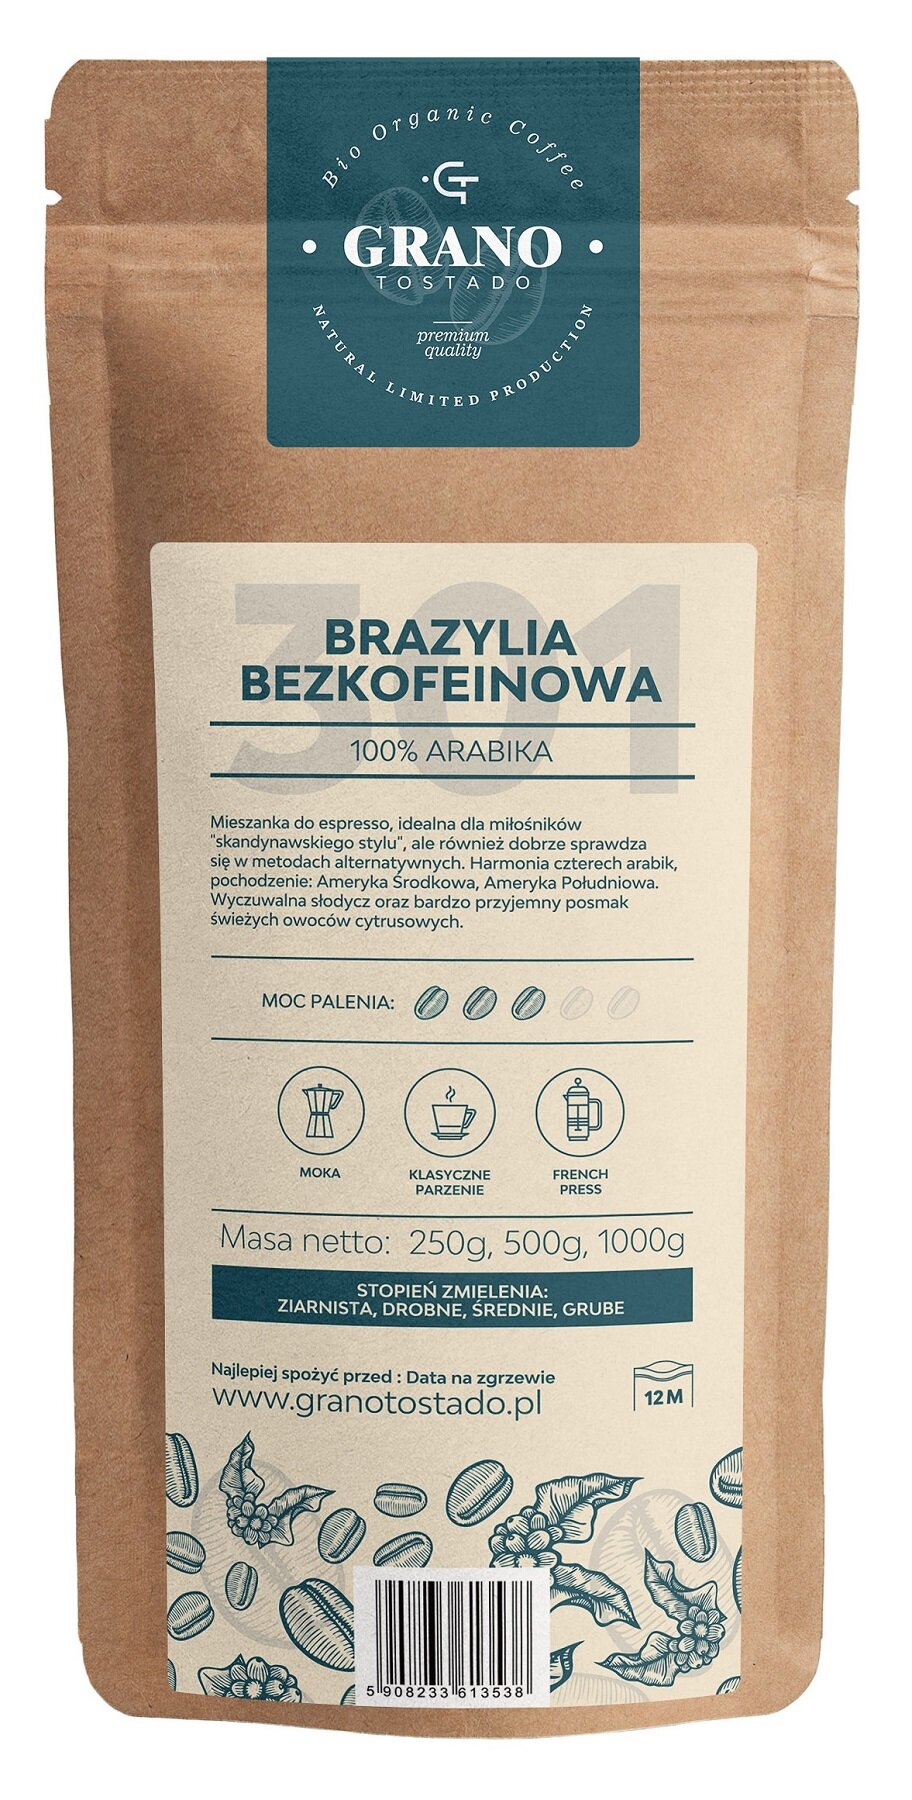 GRANO TOSTADO Brazylia Bezkofeinowa Arabica 1 kg Kawa ziarnista - niskie  ceny i opinie w Media Expert